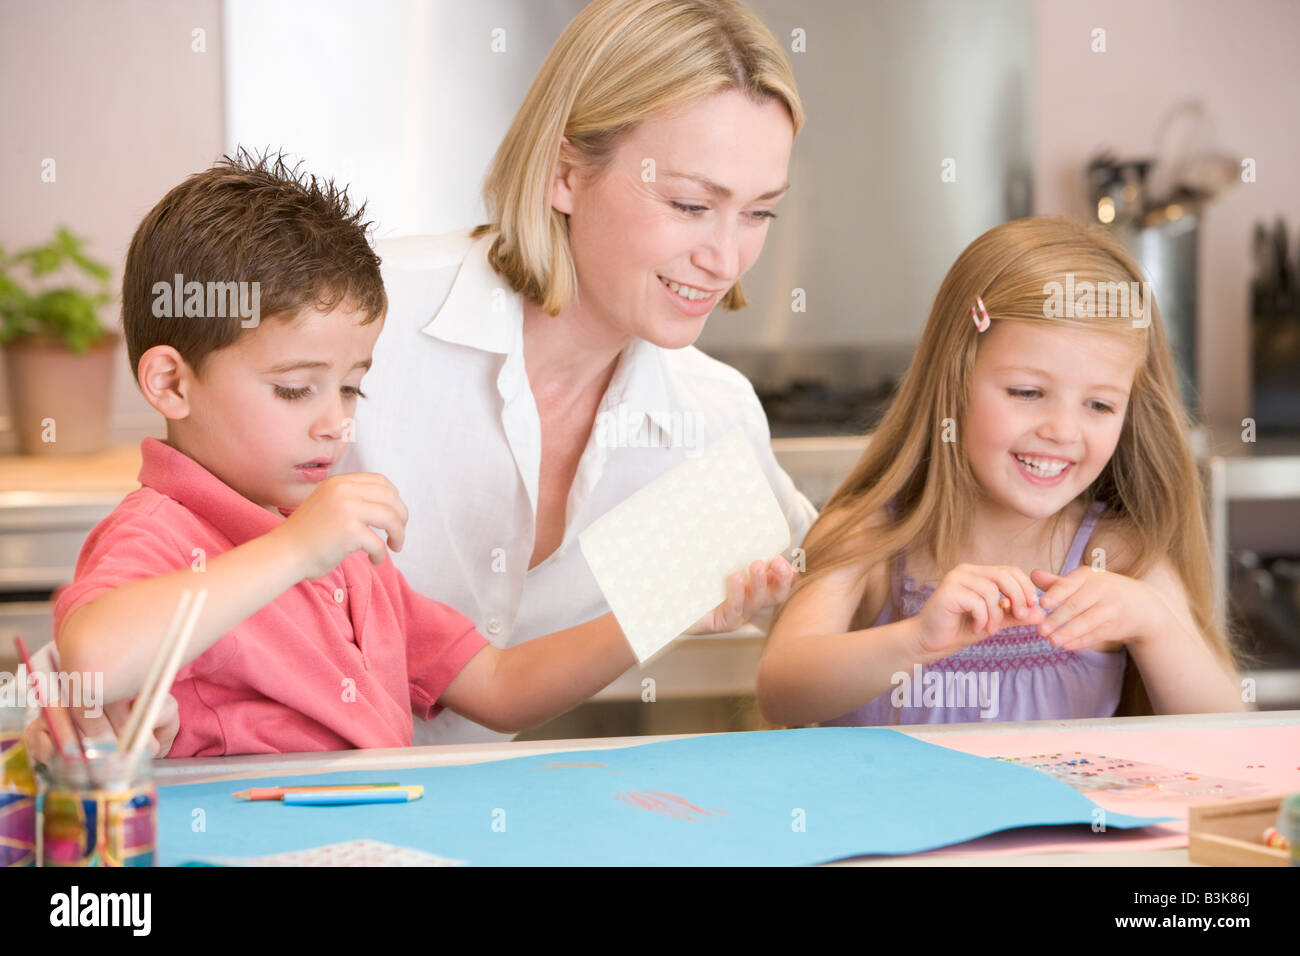 Una mujer y dos niños pequeños en la cocina con el proyecto de arte sonriendo Foto de stock